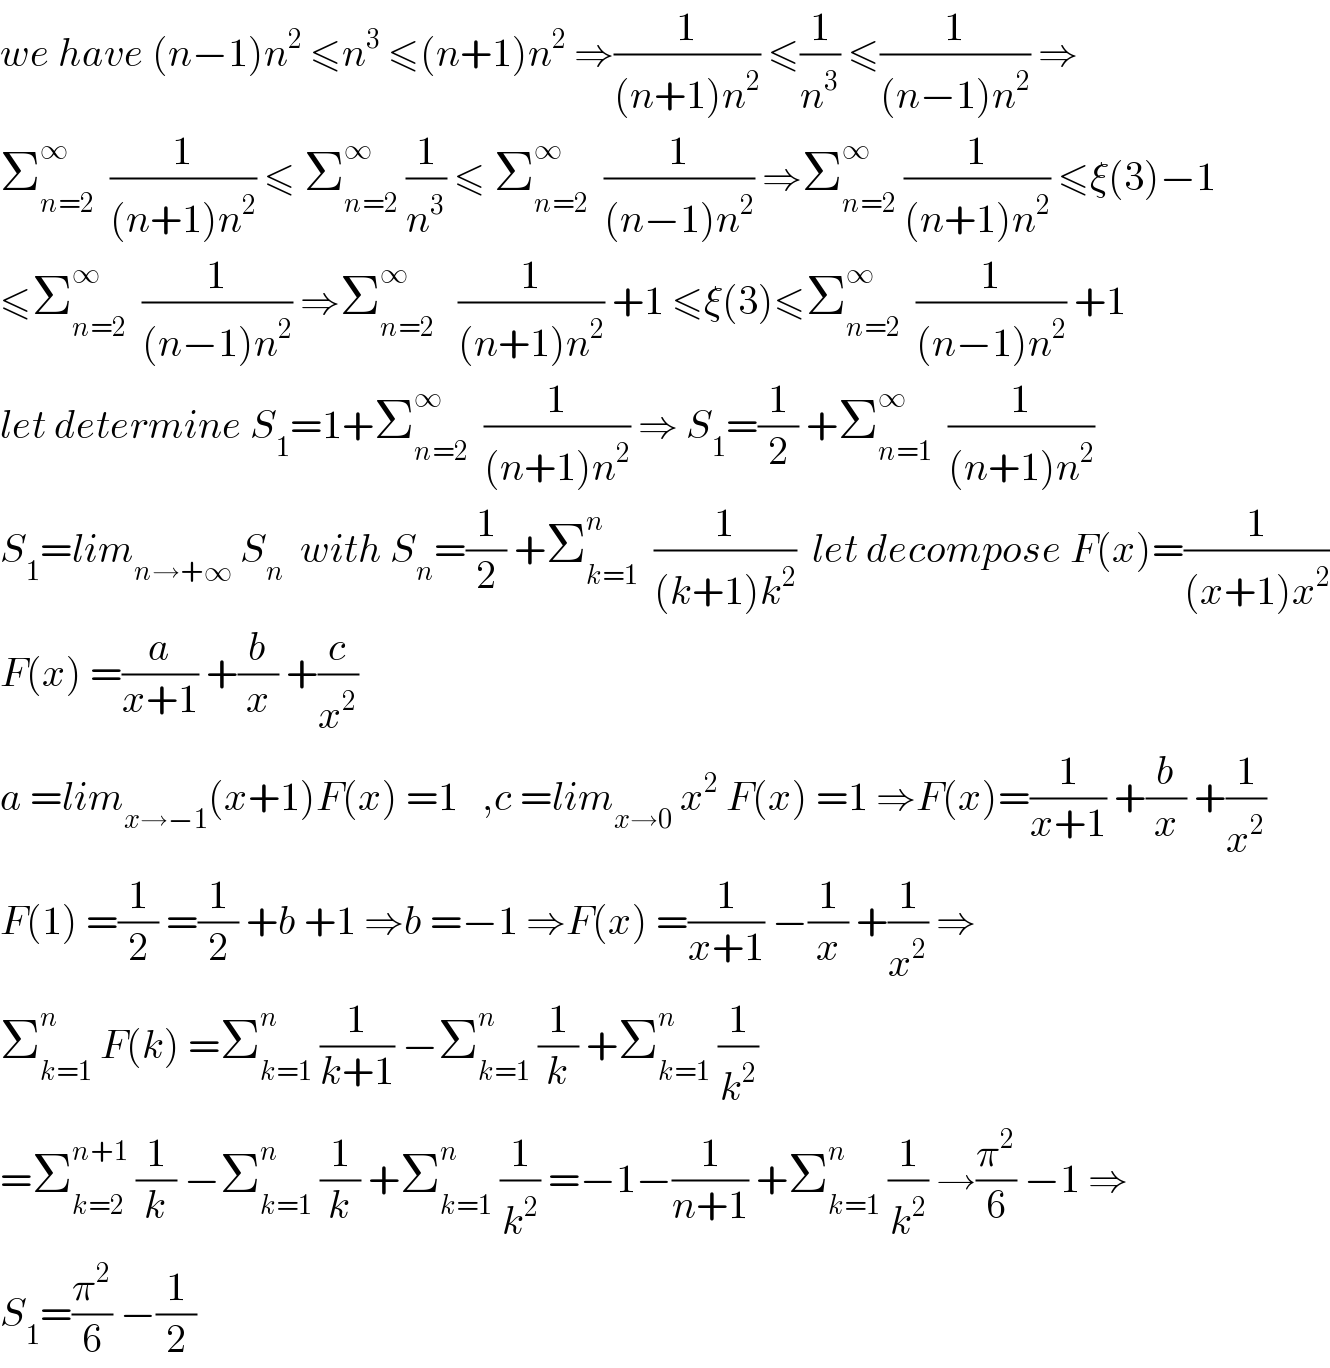 we have (n−1)n^2  ≤n^3  ≤(n+1)n^2  ⇒(1/((n+1)n^2 )) ≤(1/n^3 ) ≤(1/((n−1)n^2 )) ⇒  Σ_(n=2) ^∞   (1/((n+1)n^2 )) ≤ Σ_(n=2) ^∞  (1/n^3 ) ≤ Σ_(n=2) ^∞   (1/((n−1)n^2 )) ⇒Σ_(n=2) ^∞  (1/((n+1)n^2 )) ≤ξ(3)−1  ≤Σ_(n=2) ^∞   (1/((n−1)n^2 )) ⇒Σ_(n=2) ^∞    (1/((n+1)n^2 )) +1 ≤ξ(3)≤Σ_(n=2) ^∞   (1/((n−1)n^2 )) +1  let determine S_1 =1+Σ_(n=2) ^∞   (1/((n+1)n^2 )) ⇒ S_1 =(1/2) +Σ_(n=1) ^∞   (1/((n+1)n^2 ))  S_1 =lim_(n→+∞)  S_n   with S_n =(1/2) +Σ_(k=1) ^n   (1/((k+1)k^2 ))  let decompose F(x)=(1/((x+1)x^2 ))  F(x) =(a/(x+1)) +(b/x) +(c/x^2 )  a =lim_(x→−1) (x+1)F(x) =1   ,c =lim_(x→0)  x^2  F(x) =1 ⇒F(x)=(1/(x+1)) +(b/x) +(1/x^2 )  F(1) =(1/2) =(1/2) +b +1 ⇒b =−1 ⇒F(x) =(1/(x+1)) −(1/x) +(1/x^2 ) ⇒  Σ_(k=1) ^n  F(k) =Σ_(k=1) ^n  (1/(k+1)) −Σ_(k=1) ^n  (1/k) +Σ_(k=1) ^n  (1/k^2 )  =Σ_(k=2) ^(n+1)  (1/k) −Σ_(k=1) ^n  (1/k) +Σ_(k=1) ^n  (1/k^2 ) =−1−(1/(n+1)) +Σ_(k=1) ^n  (1/k^2 ) →(π^2 /6) −1 ⇒  S_1 =(π^2 /6) −(1/2)  